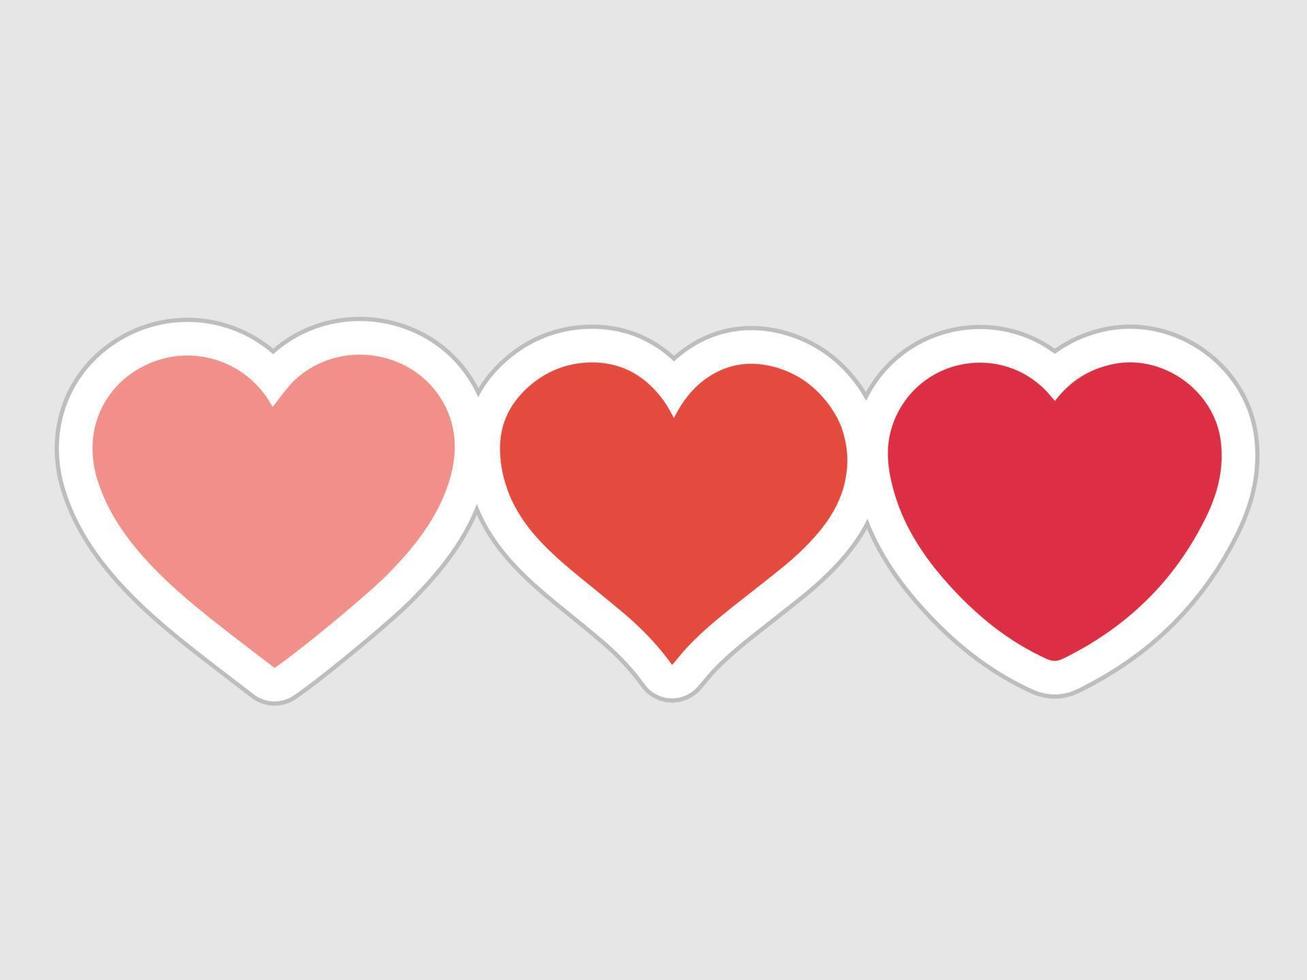 vector illustratie harten in divers stijlen